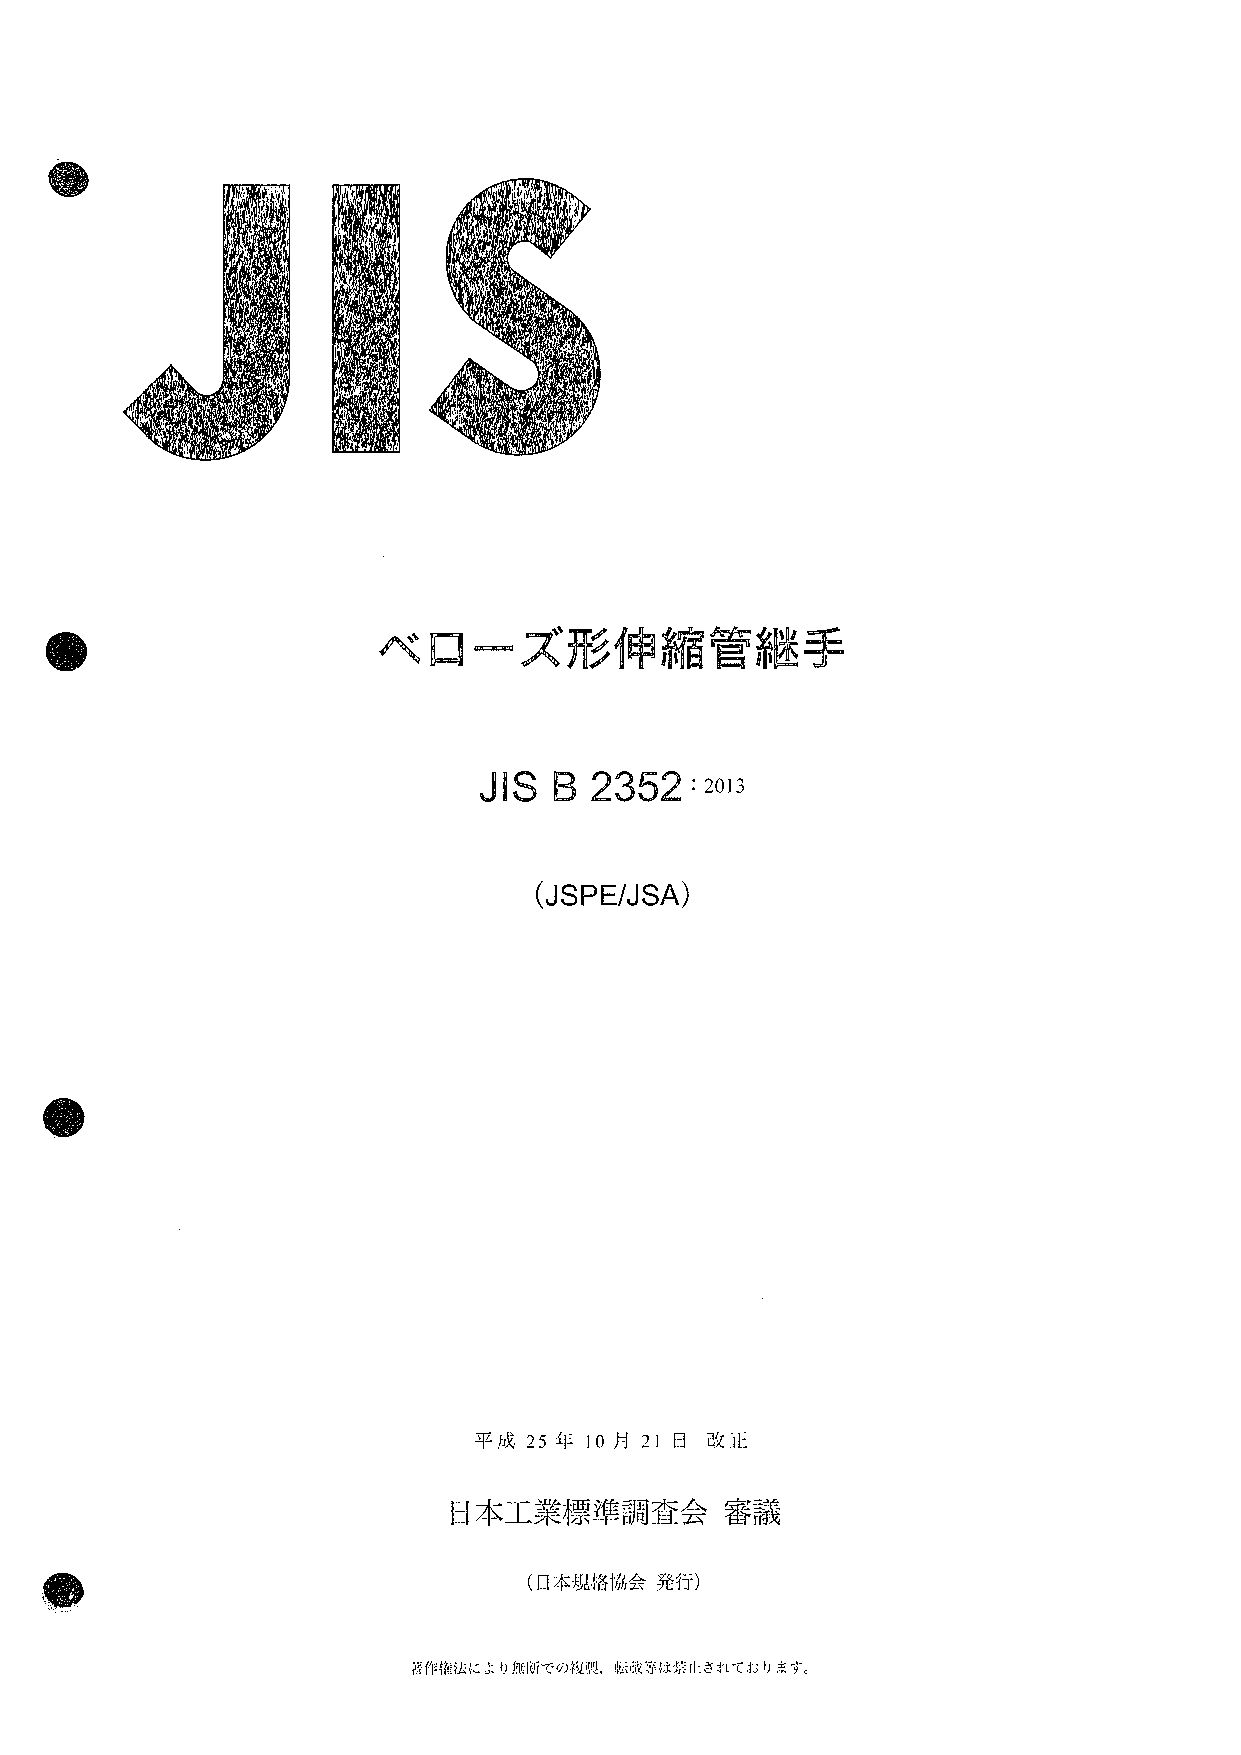 JIS B 2352:2013封面图